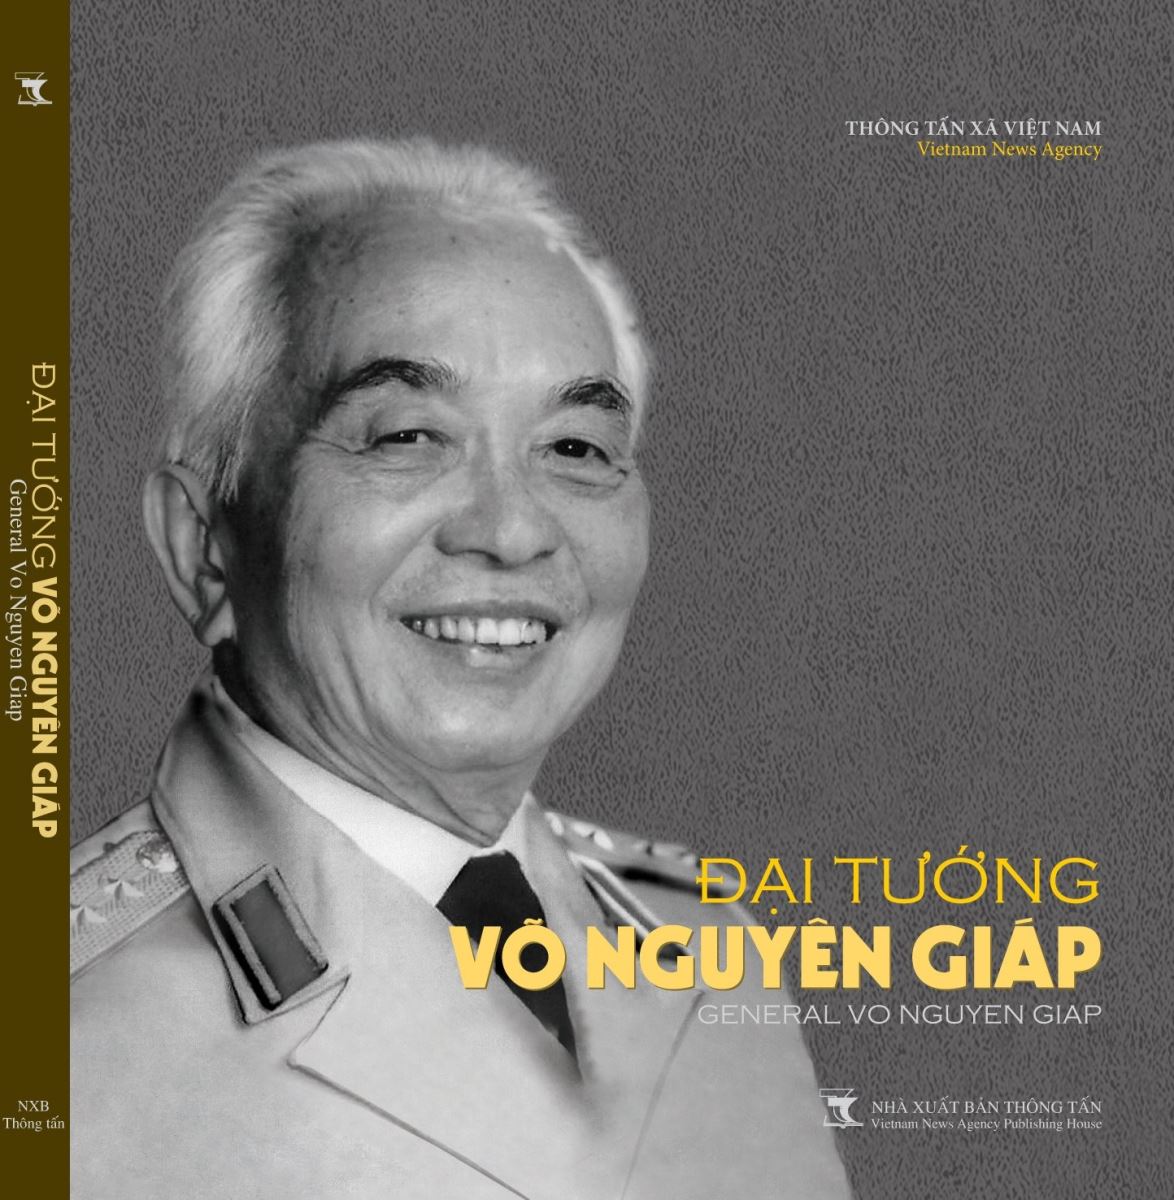 Sách ảnh “Đại tướng Võ Nguyên Giáp”: Tái hiện cuộc đời, sự nghiệp của Đại tướng